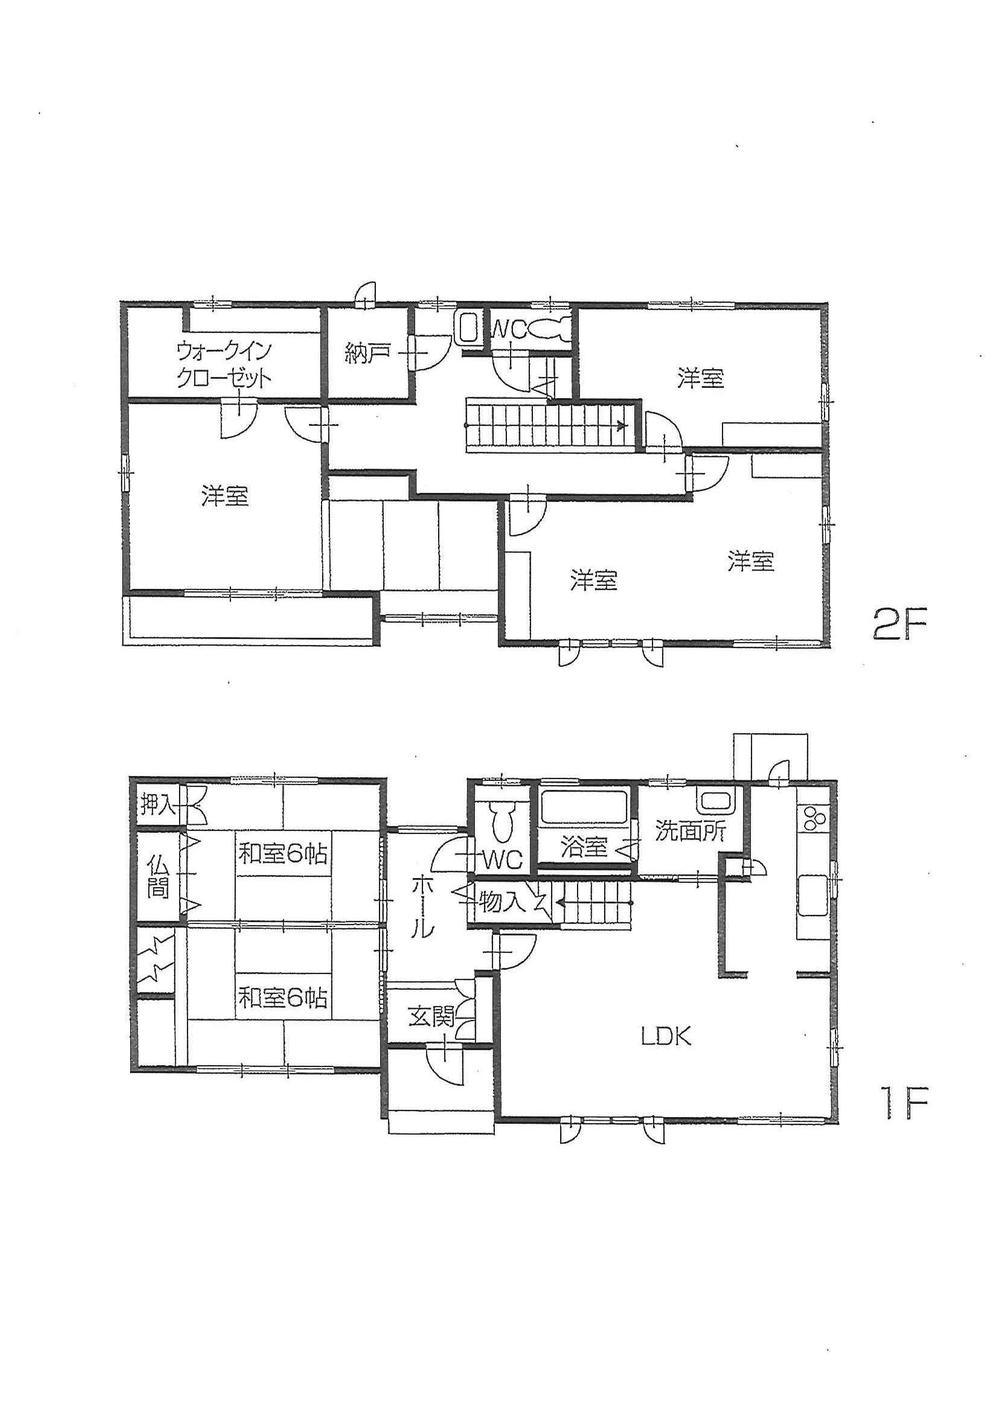 Floor plan. 42,800,000 yen, 5LDK + S (storeroom), Land area 711.66 sq m , Building area 162.93 sq m spacious floor plan 5LDK + S